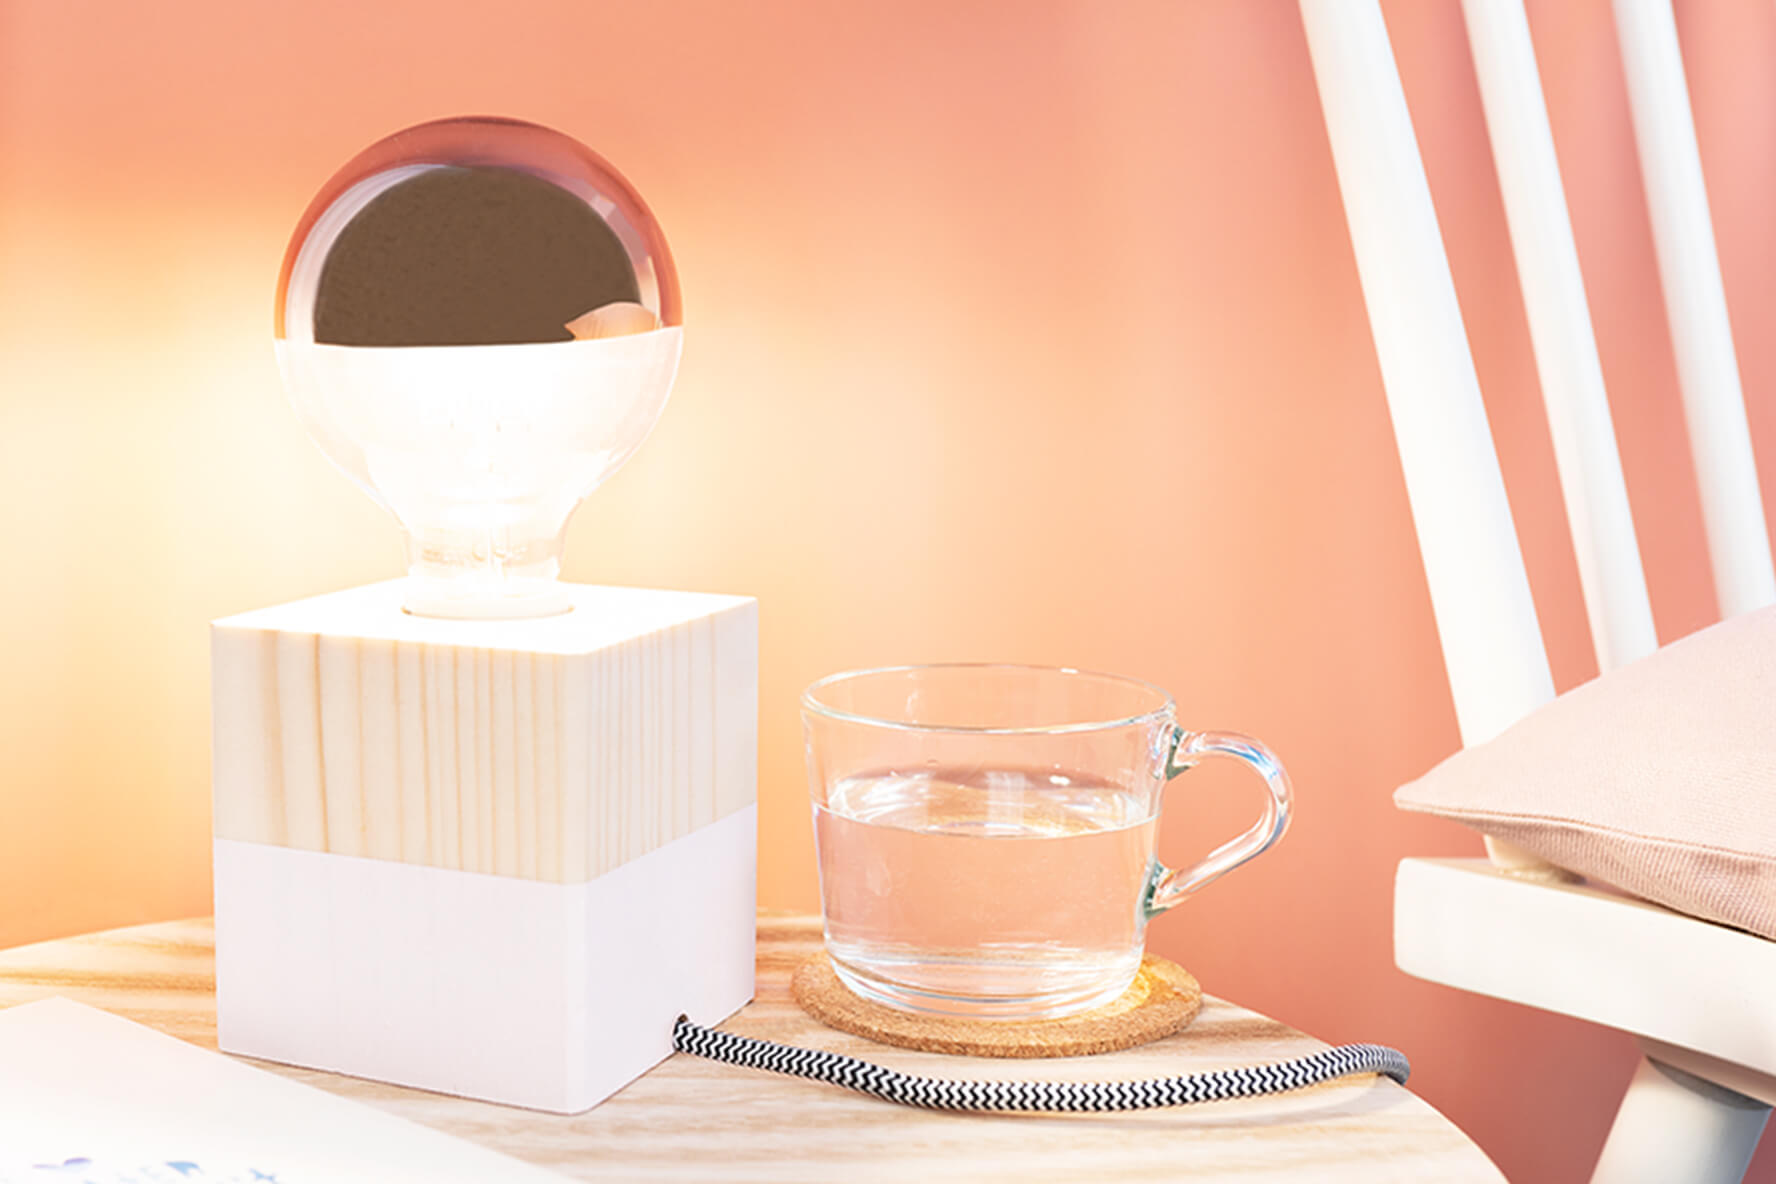 Lampe selber bauen – Ideen und Tipps für zu Hause